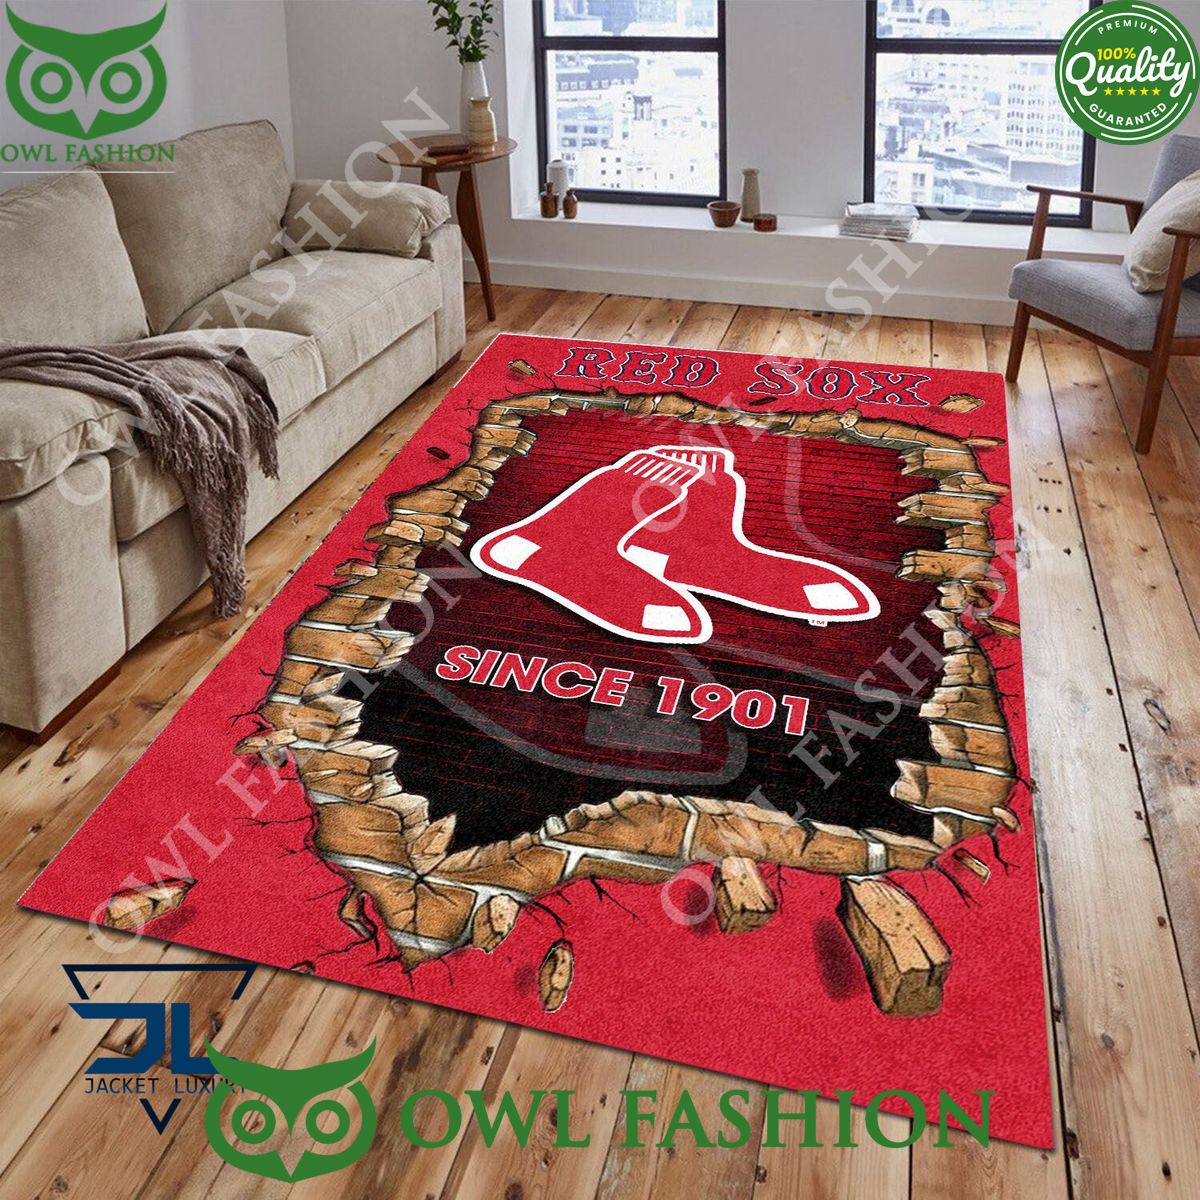 Broken Wall Boston Red Sox MLB Baseball Team Rug Carpet Living Room